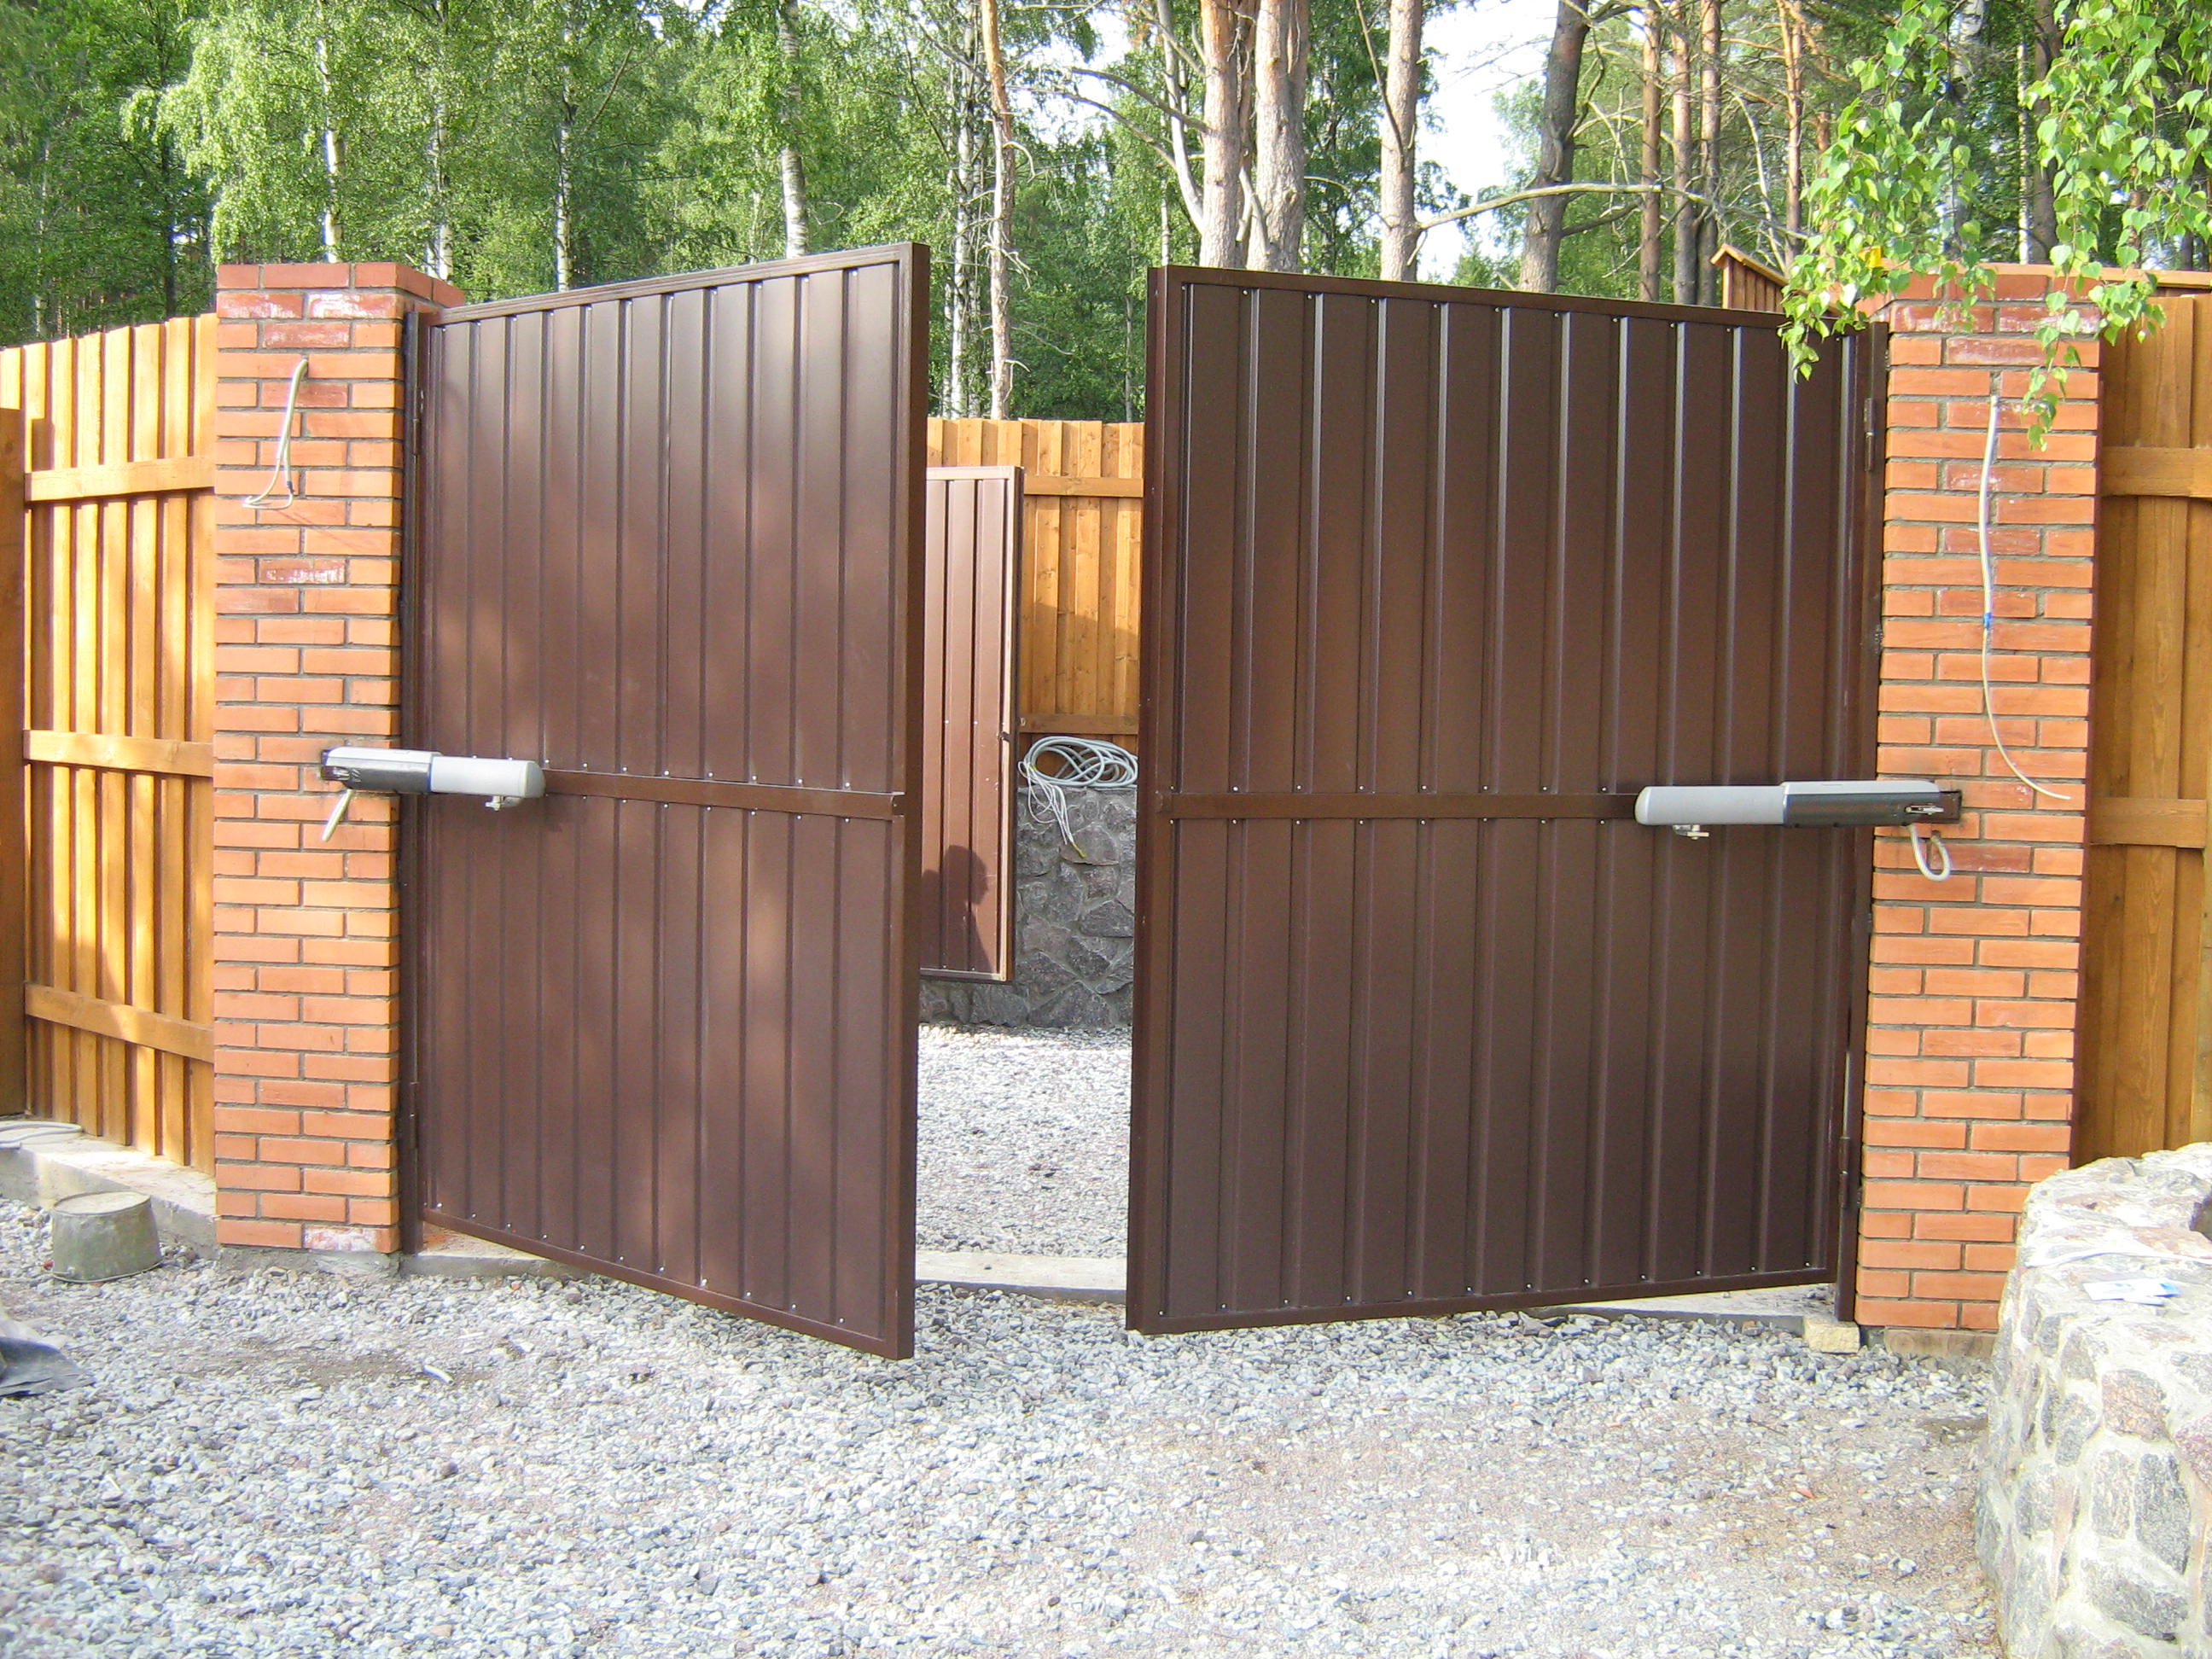 Автоматические распашные ворота , цена под ключ от 25 000 руб .